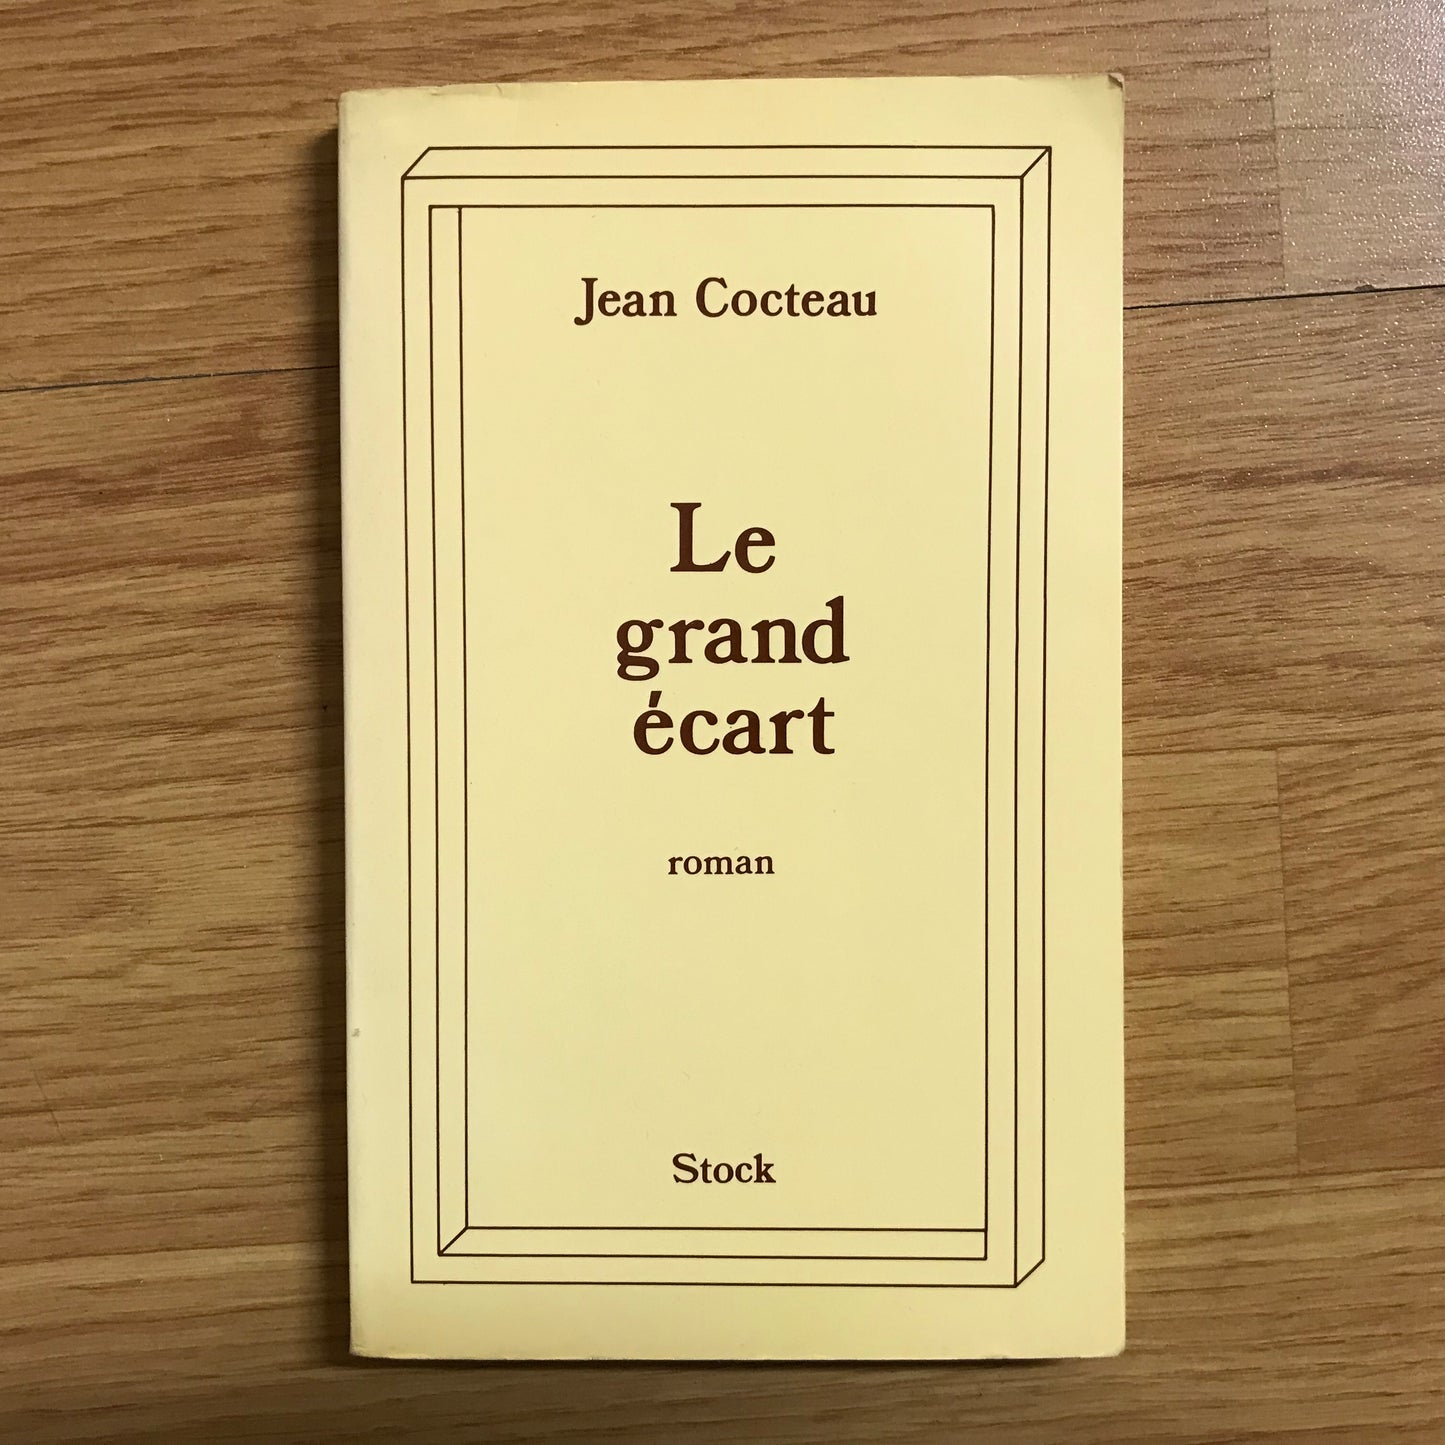 Cocteau, Jean - Le grand écart